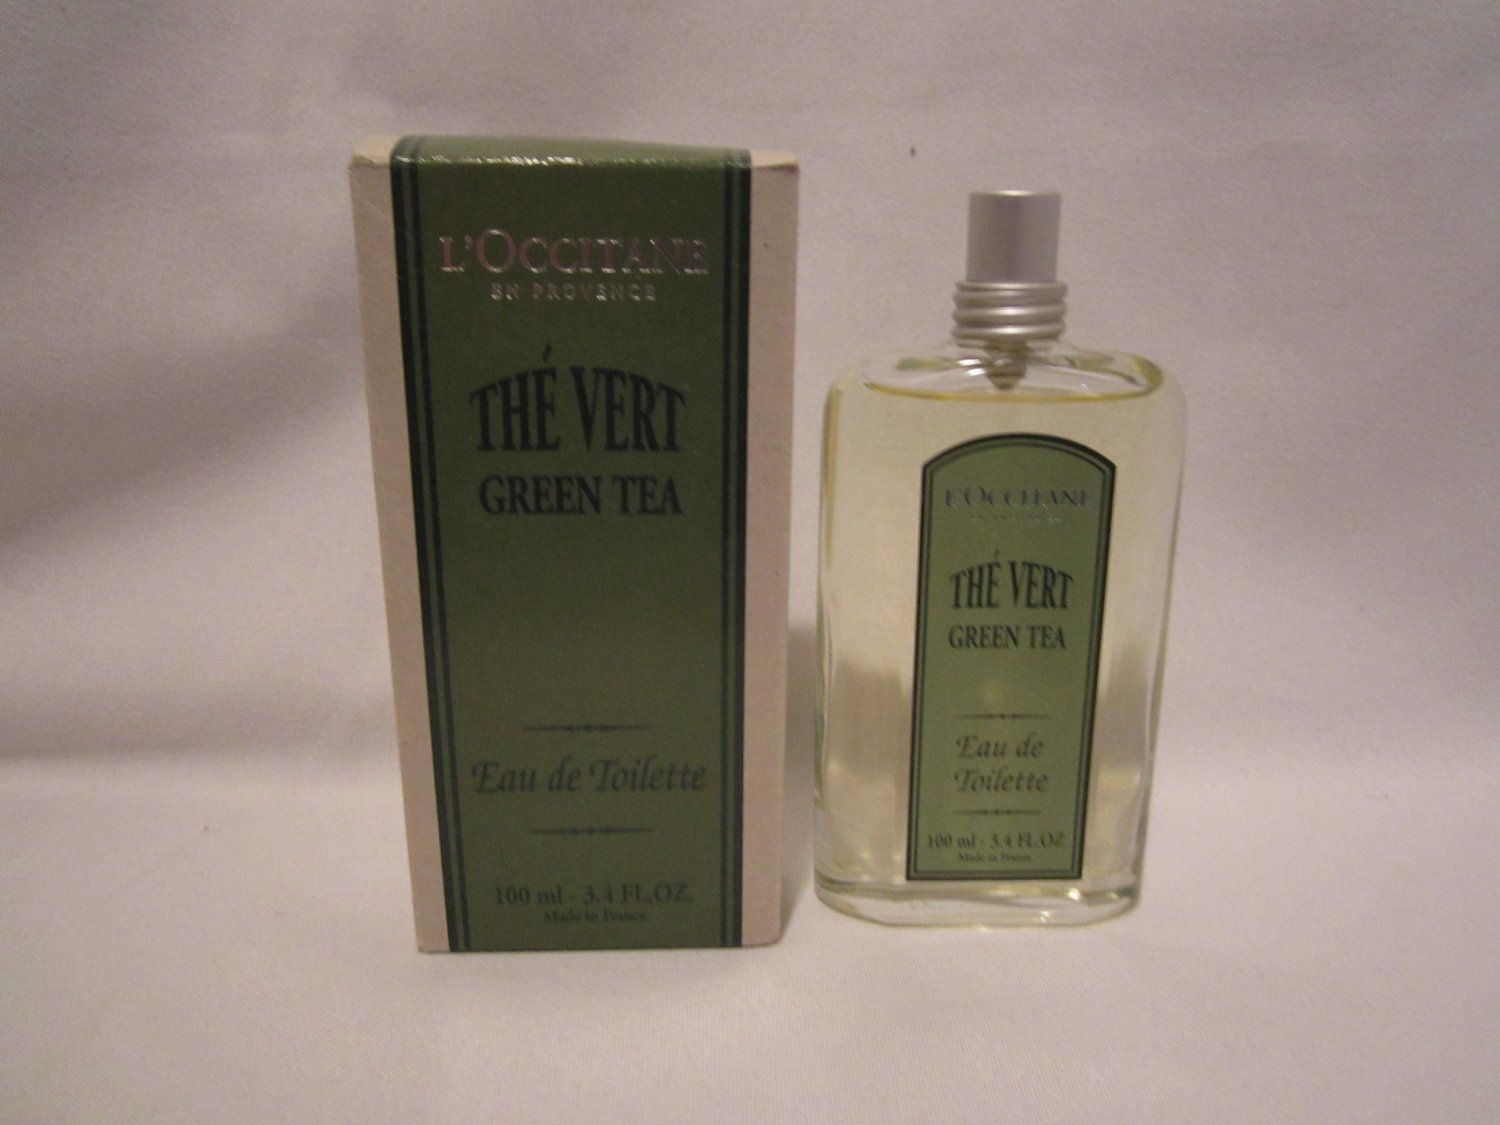 Loccitane Green Tea  EDT original The Vert  Eau de Toilette Large 3.4 oz. 100 ml Rare Disc'd